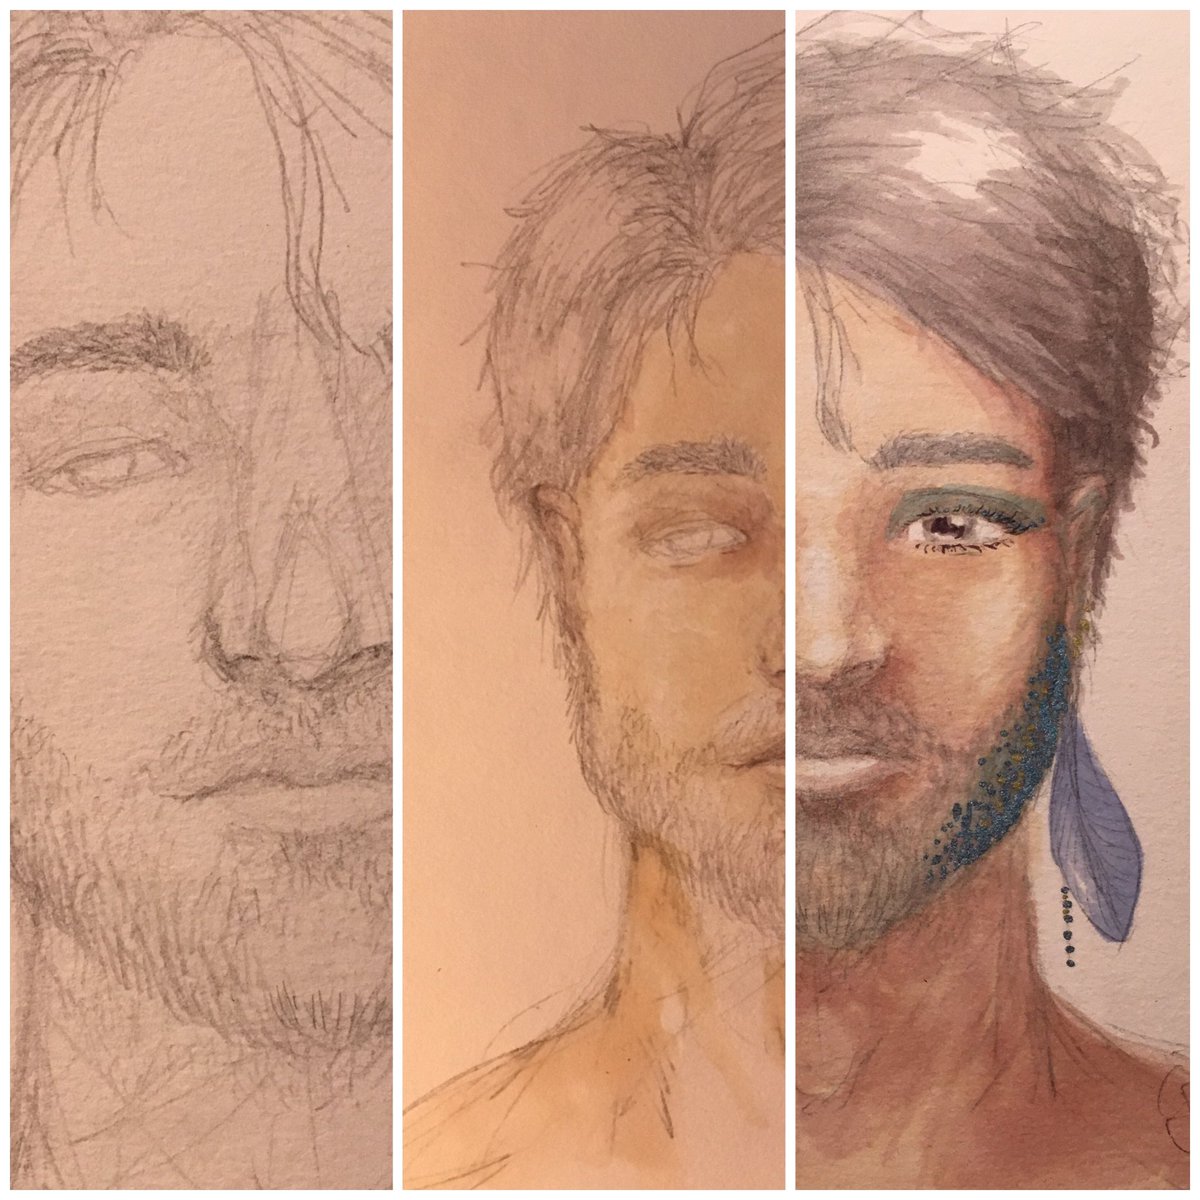 #DrawingProcess
#art #dailyart #drawing #lgbt #DrawingCommunity #makeup #feather #male #drawingmale